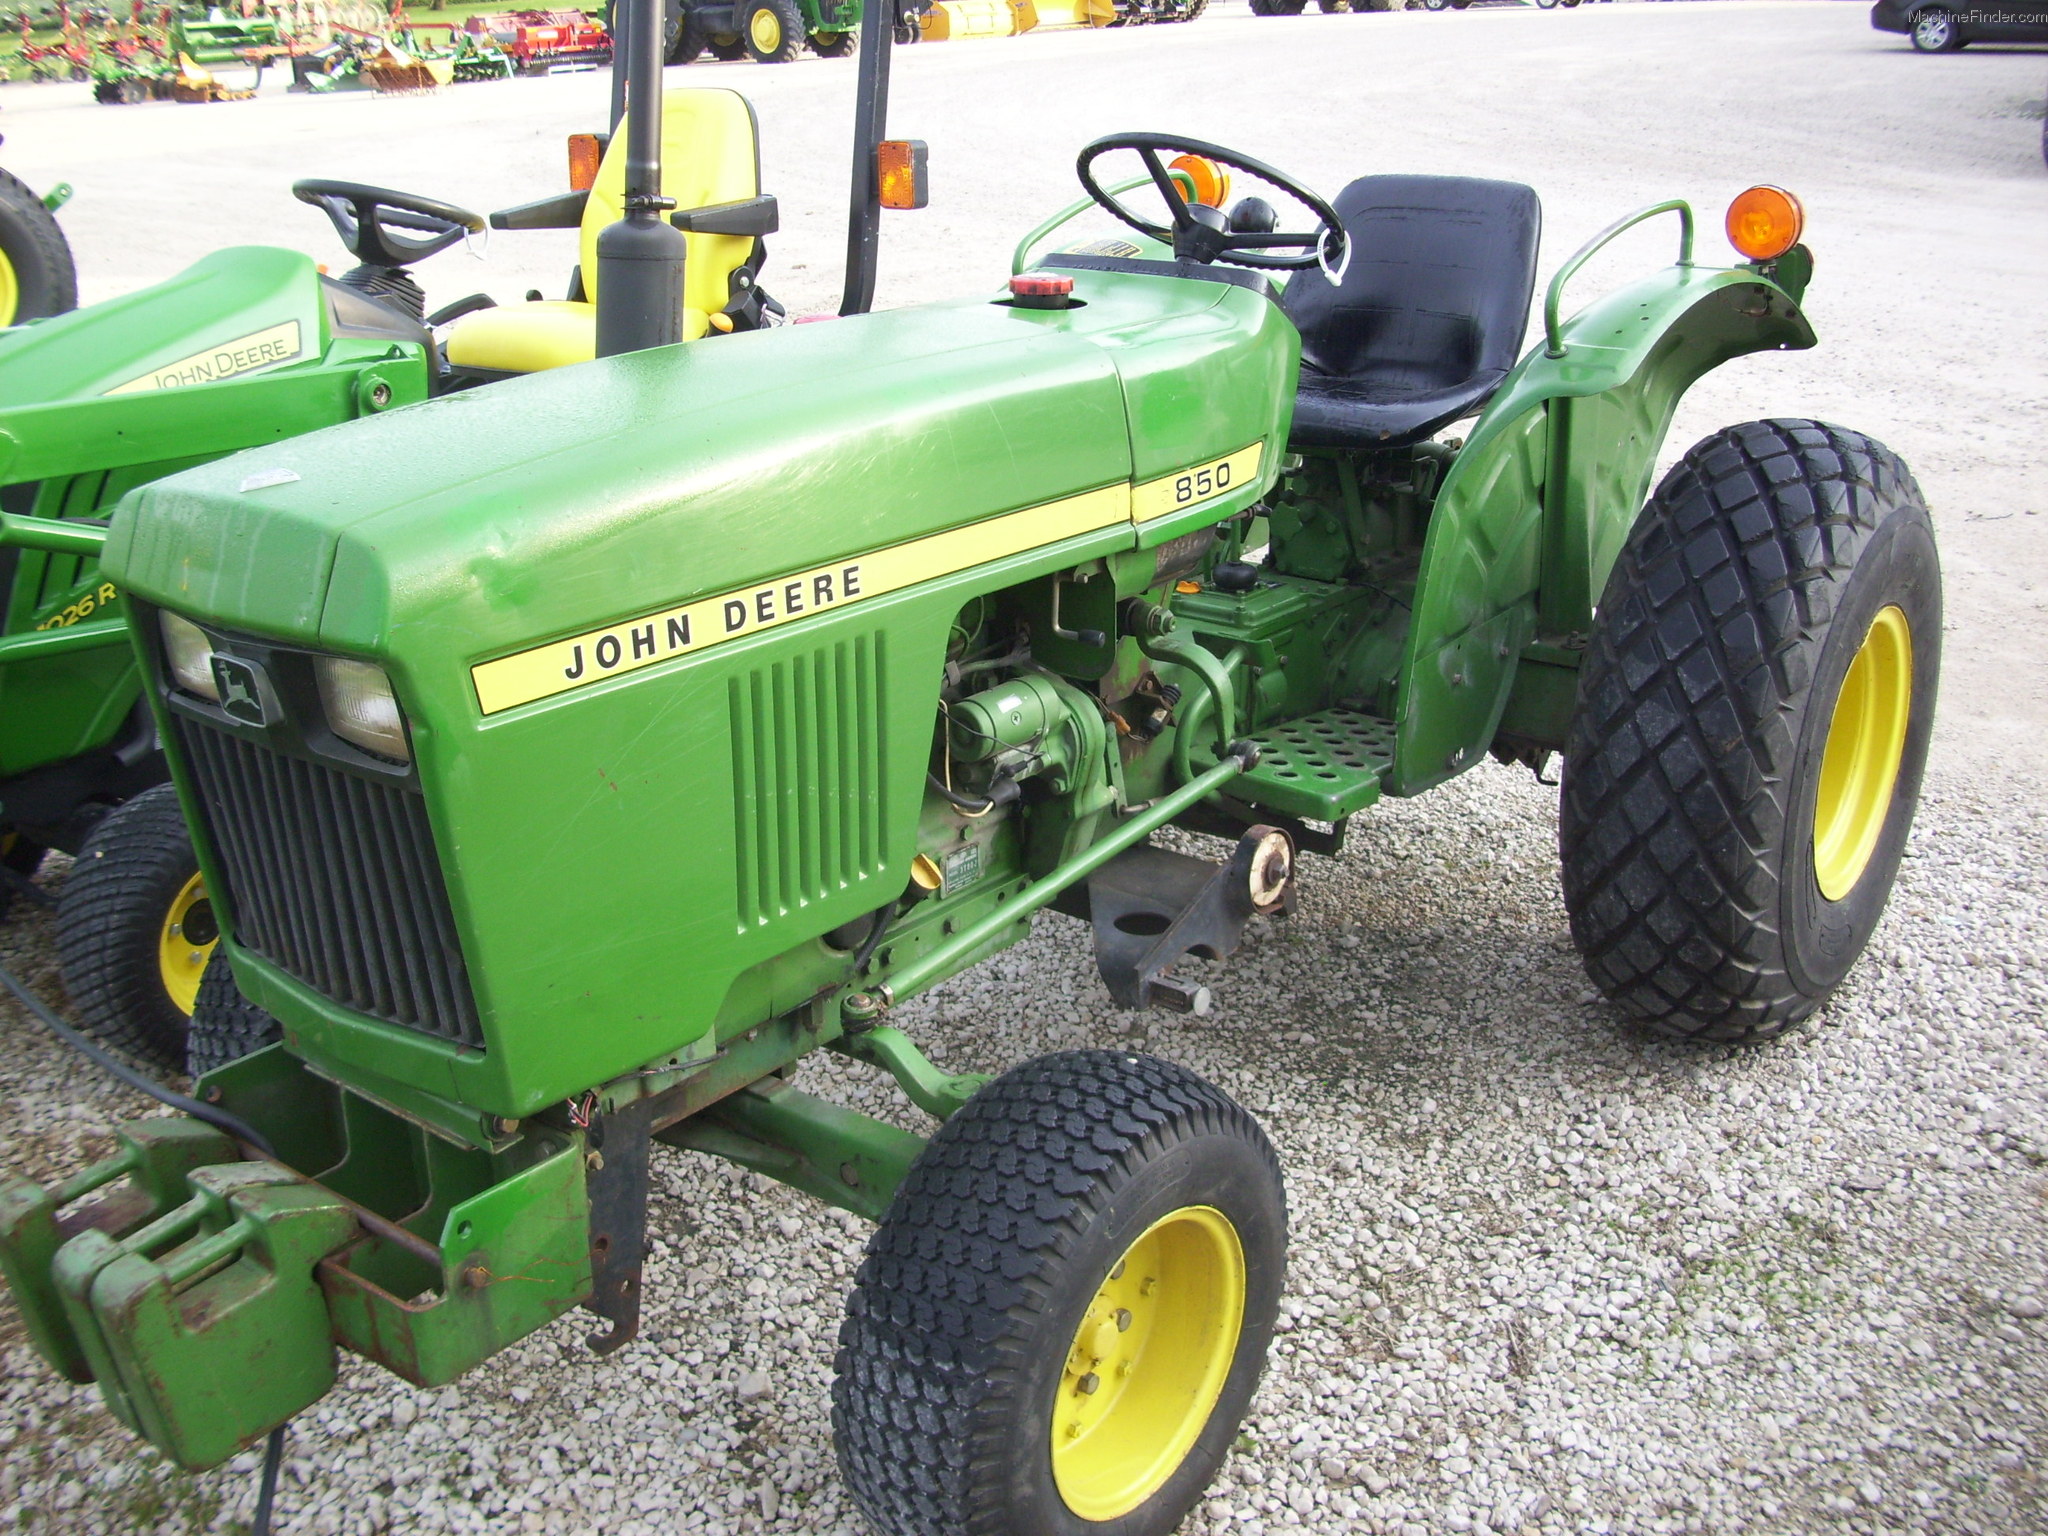 John Deere 850 Tractors - Compact (1-40hp.) - John Deere ...